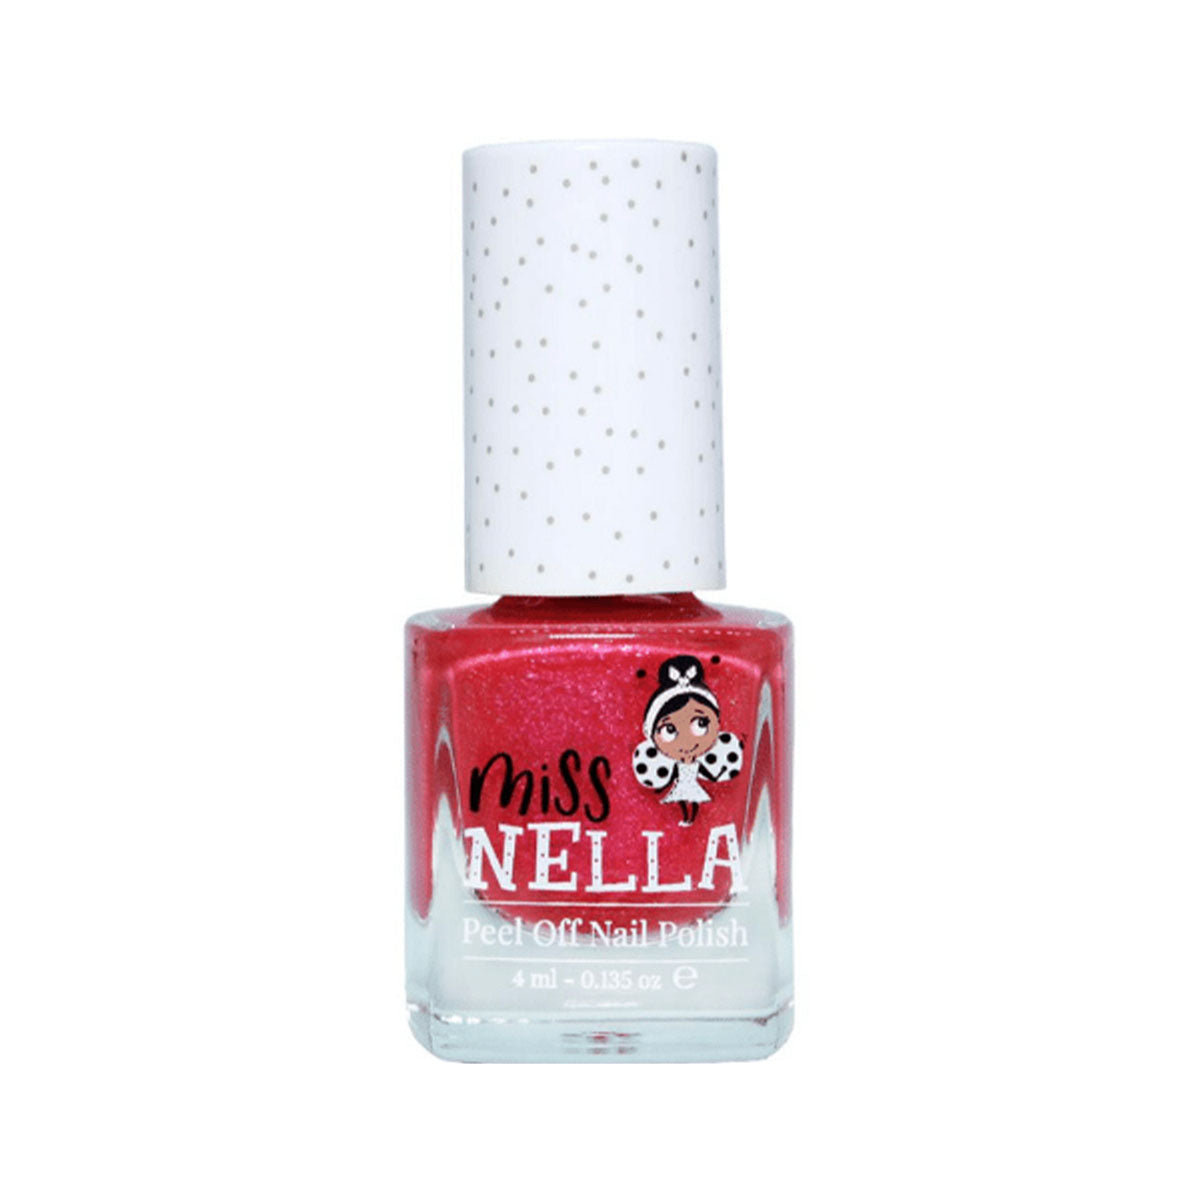 Laat de nageltjes van jouw kindje shinen met de nagellak tickle me pink van het merk Miss Nella. De peel off nagellak is speciaal ontworpen voor kinderen en is vrij van chemicaliën. In verschillende kleuren. VanZus